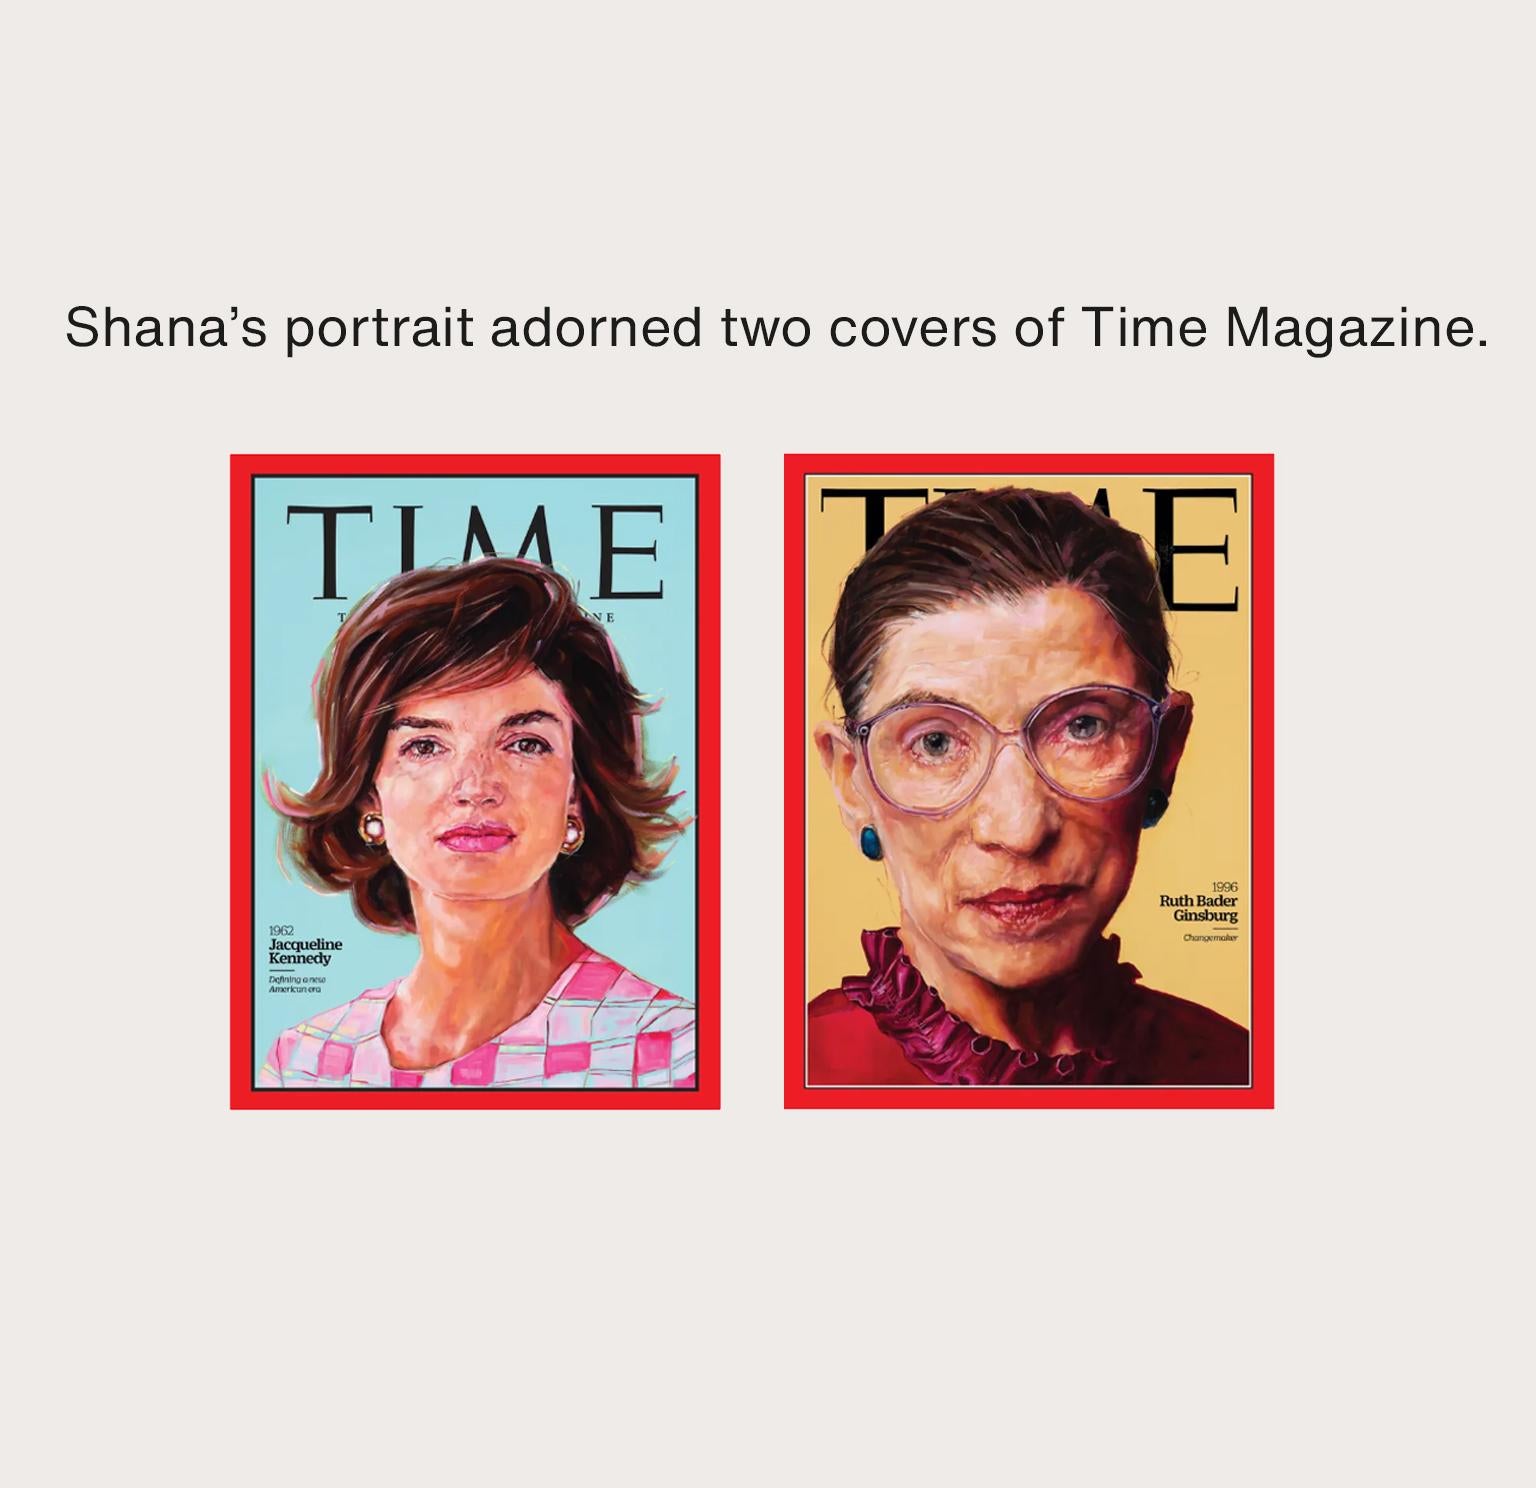 Les portraits de Shana ont orné deux couvertures du Time Magazine.
 
Le travail de Shana porte sur le visage et les yeux. Visage jeune, visage âgé, noir ou blanc. Ses sujets sont confus, solitaires, dépenaillés et désolés. Une fois que nous avons